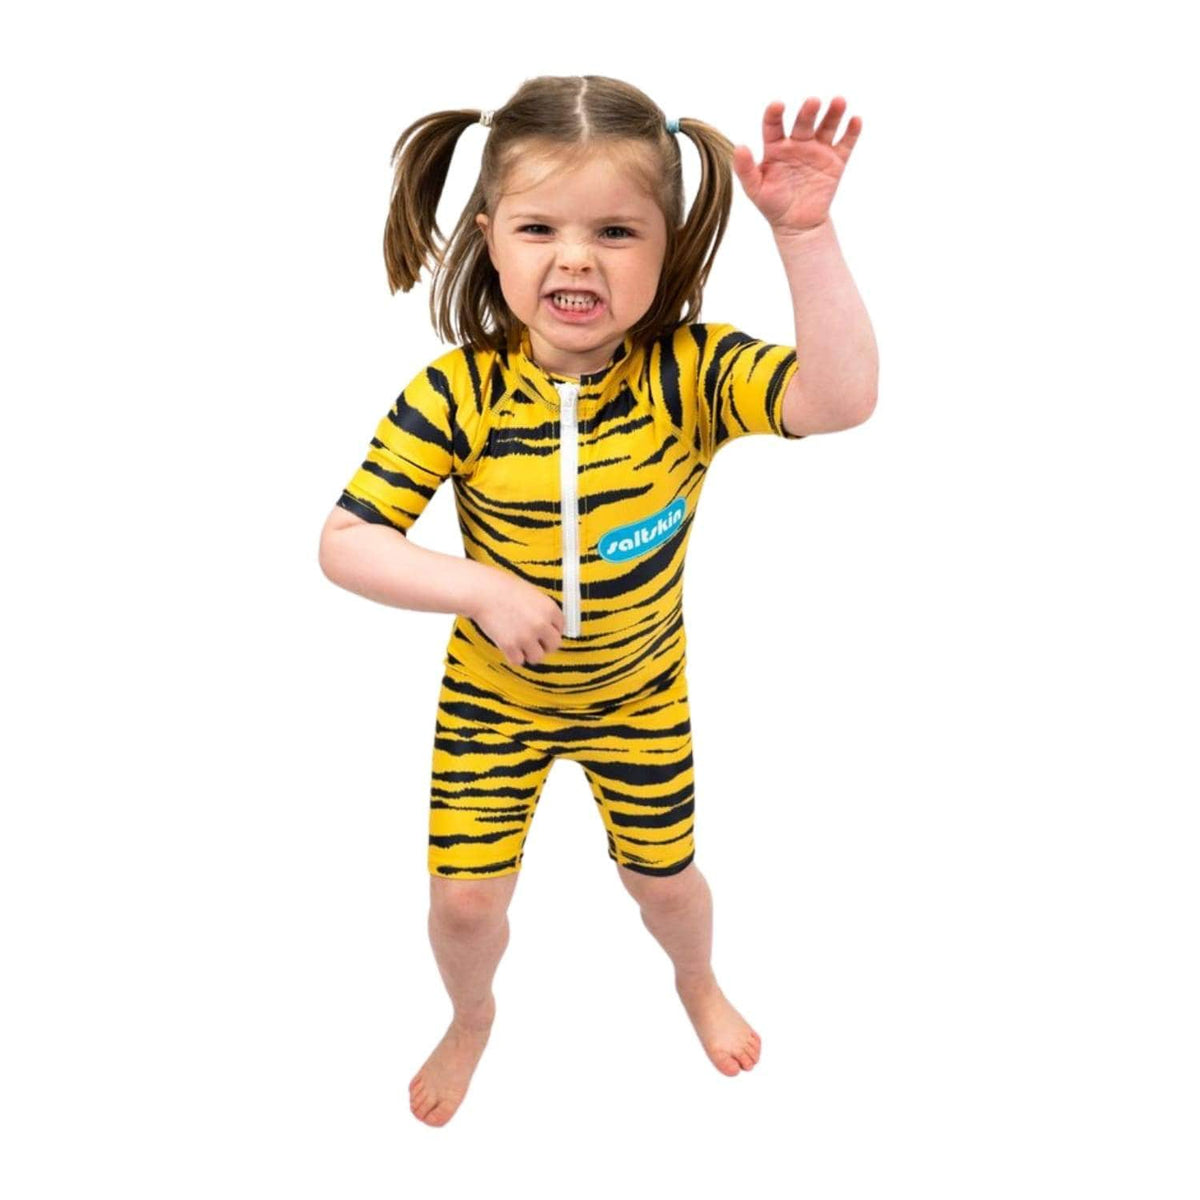 Saltskin Kids UV Shorty Sun Suit Tiger - Kids UV Rash Vest by Saltskin